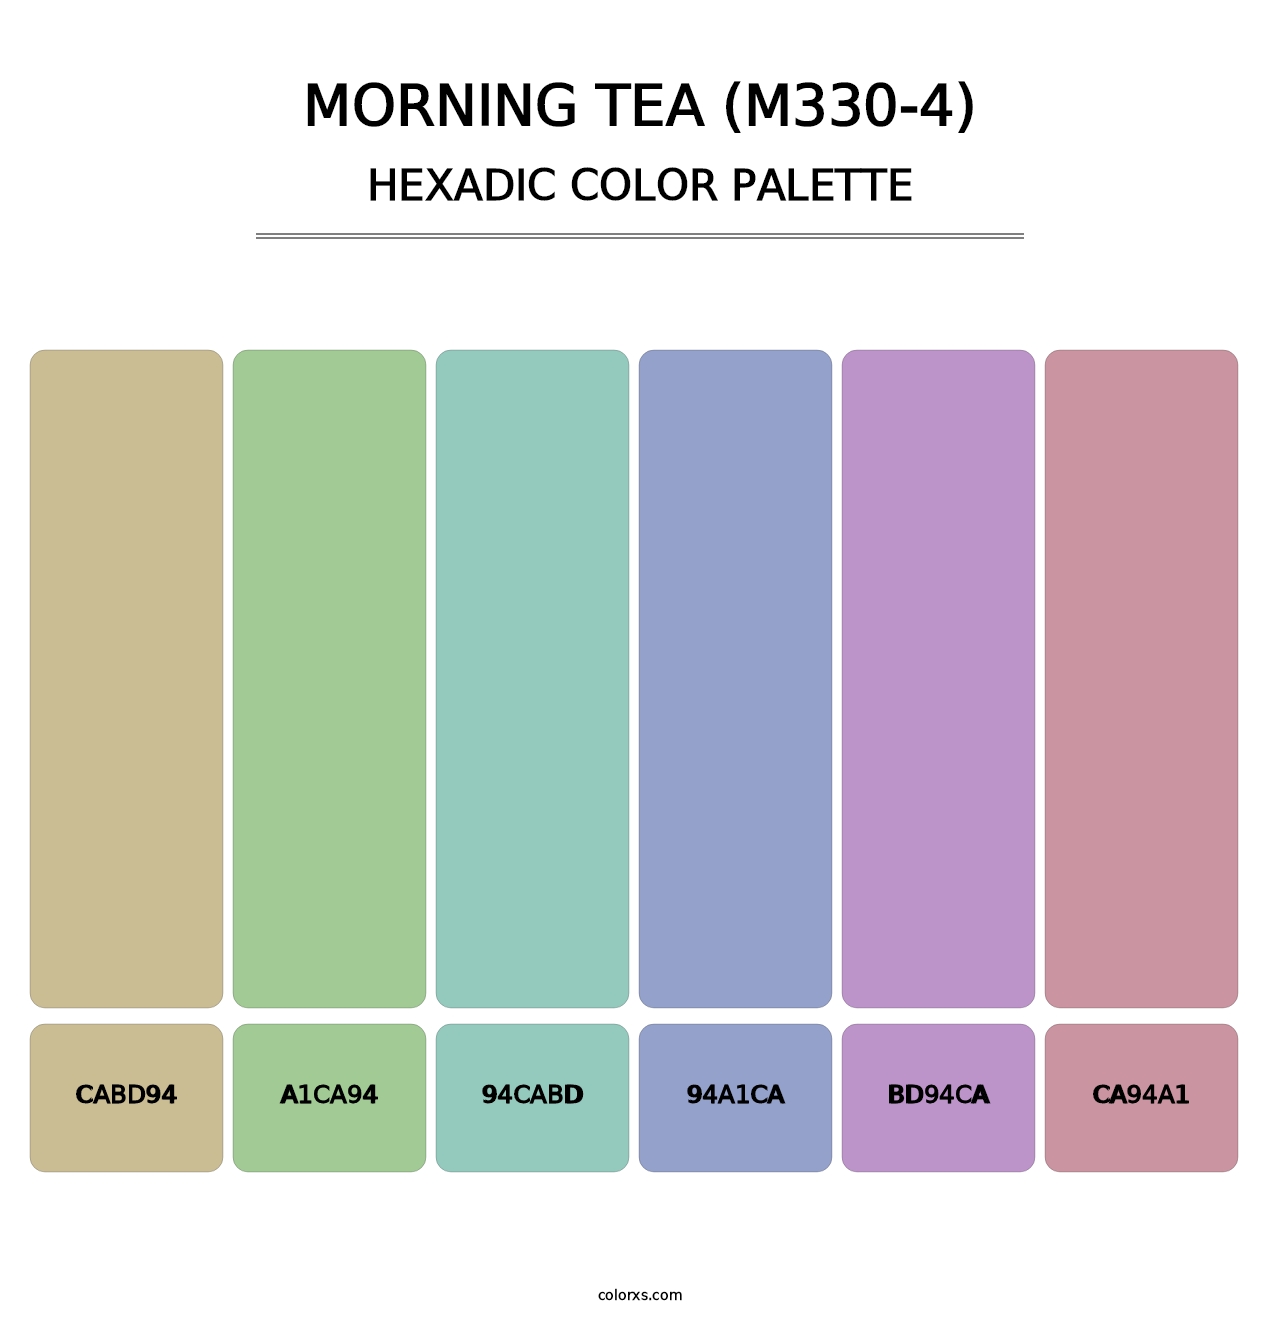 Morning Tea (M330-4) - Hexadic Color Palette